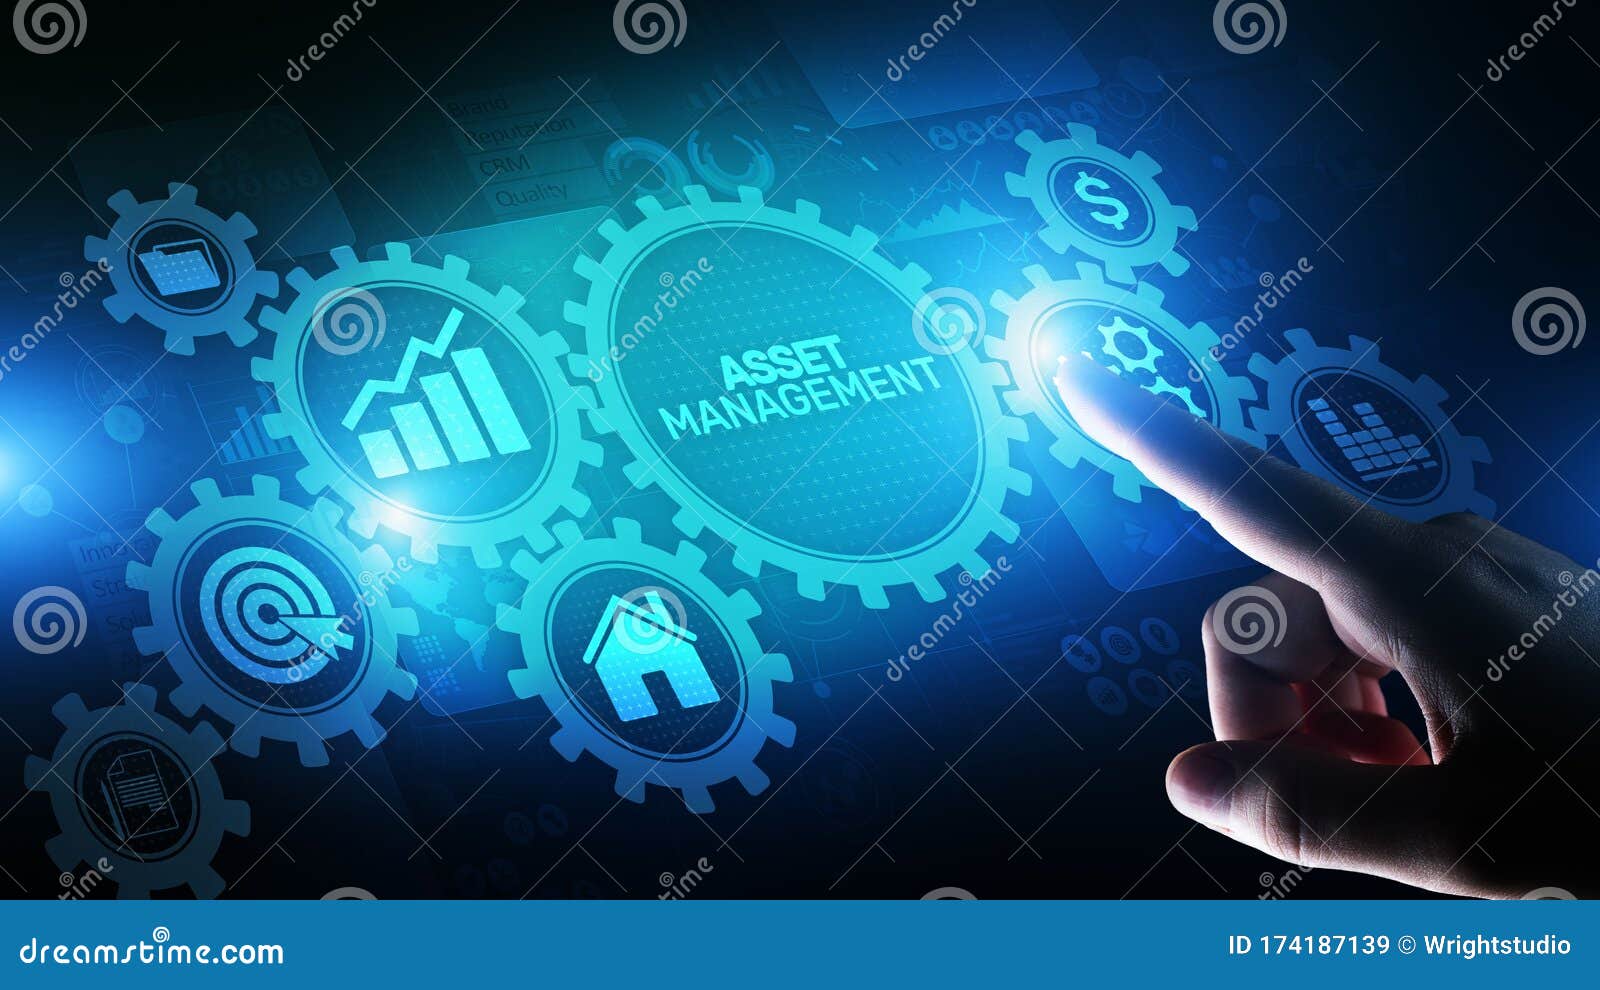 asset management business technology internet concept button on virtual screen.